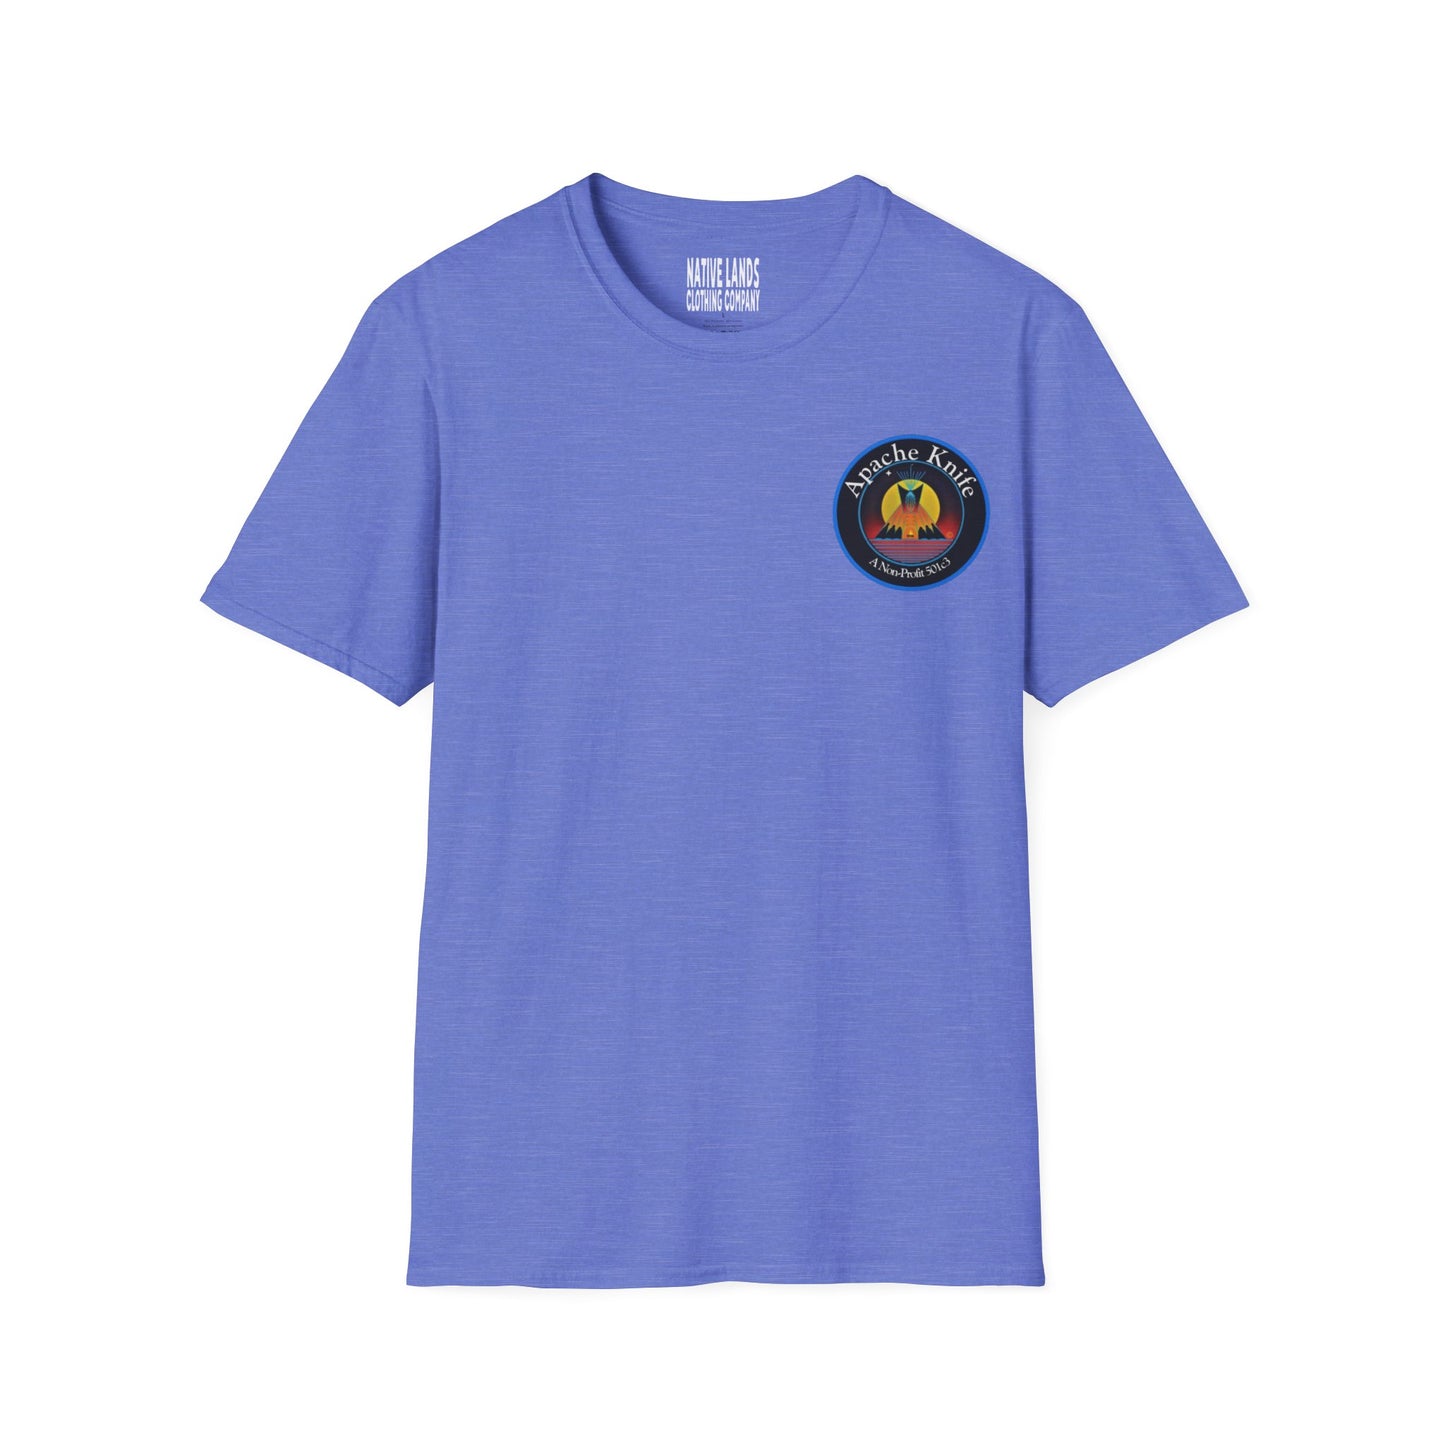 Рубашка Apache Knife Foundation для некоммерческих организаций (спереди/сзади), хлопок коренных американцев (специальный заказ)